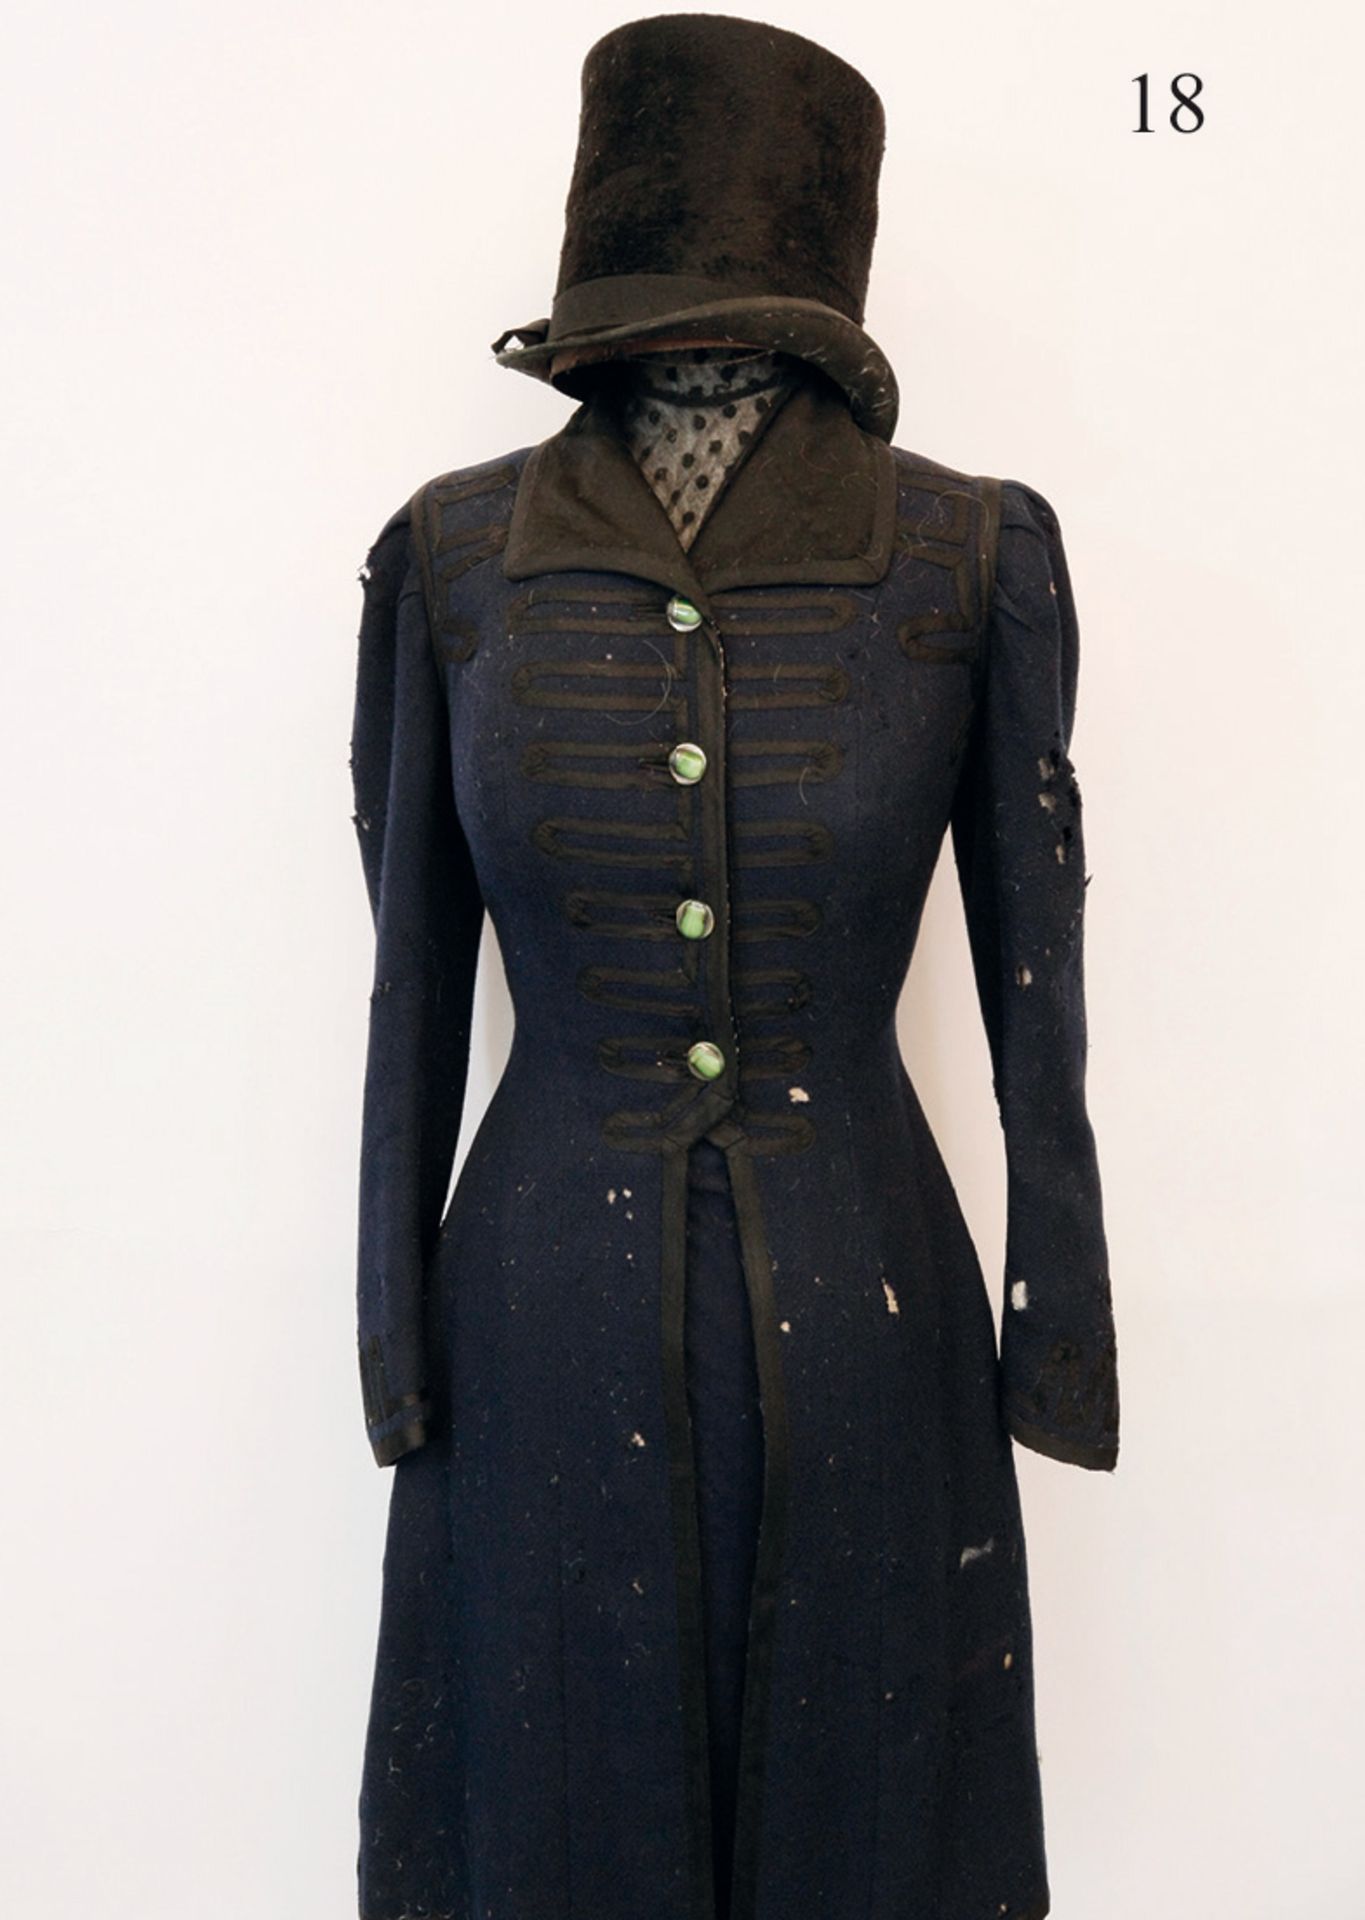 Damenkleid, um 1880/90